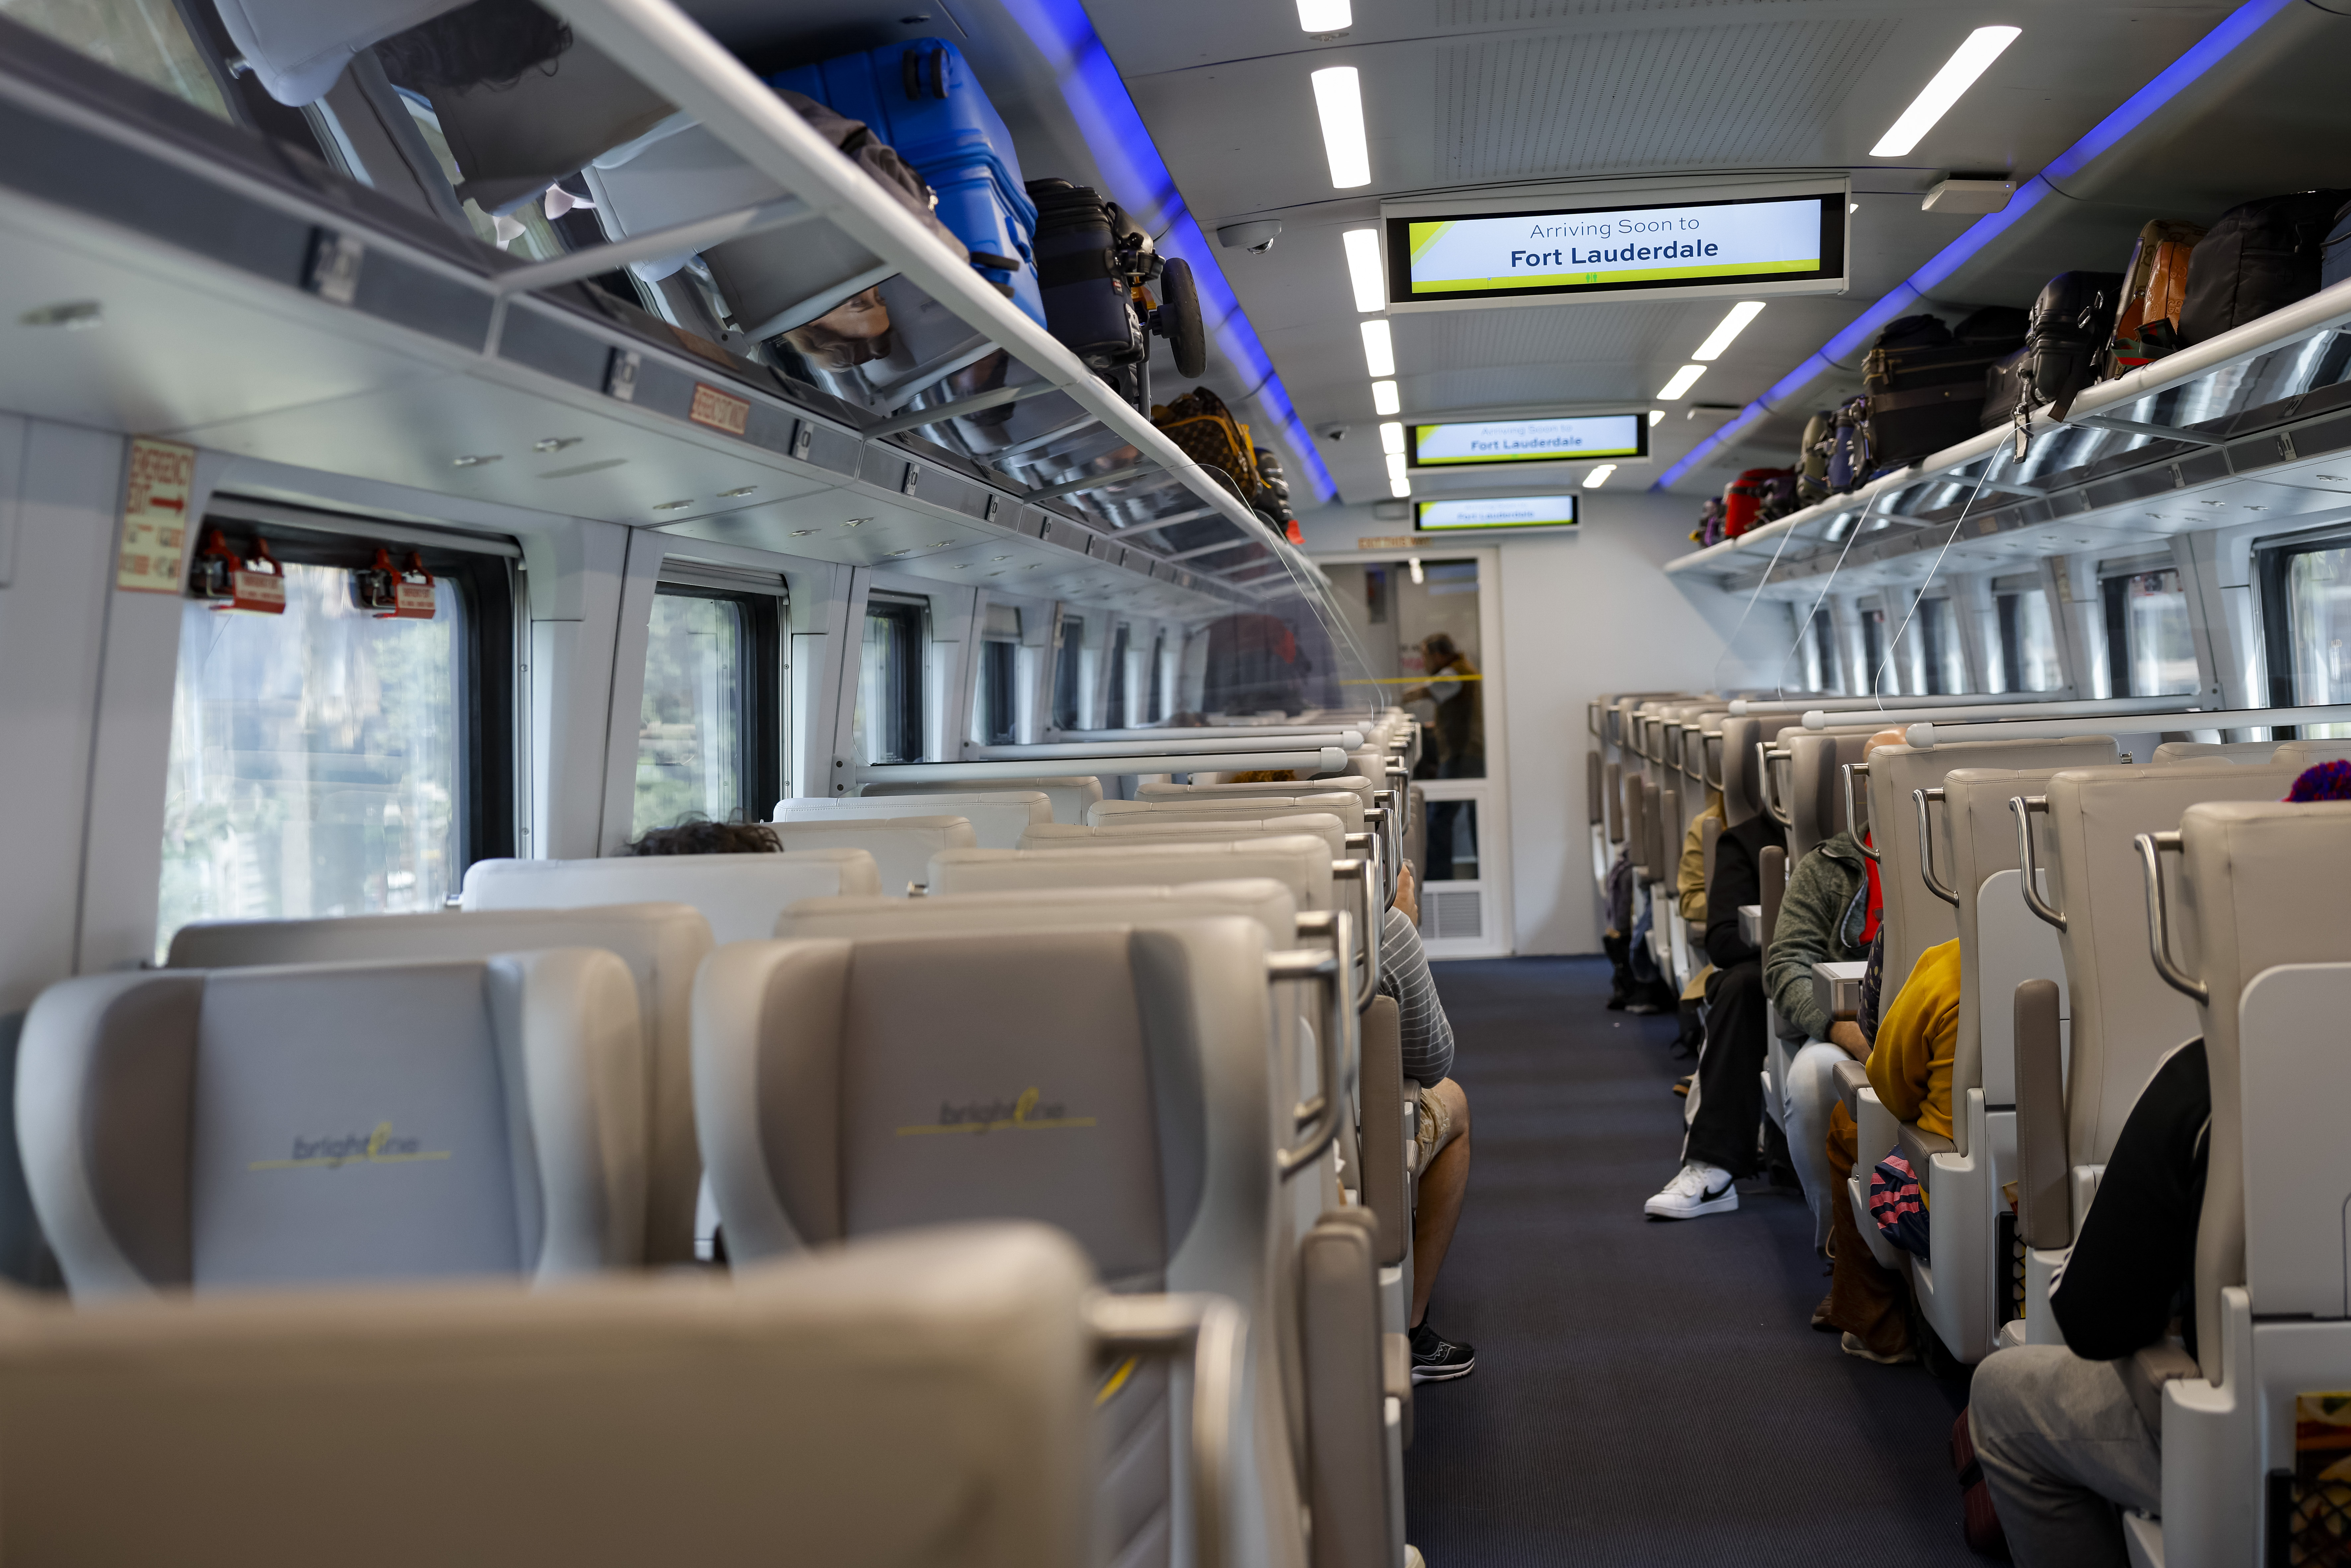 The interior of a Brightline train